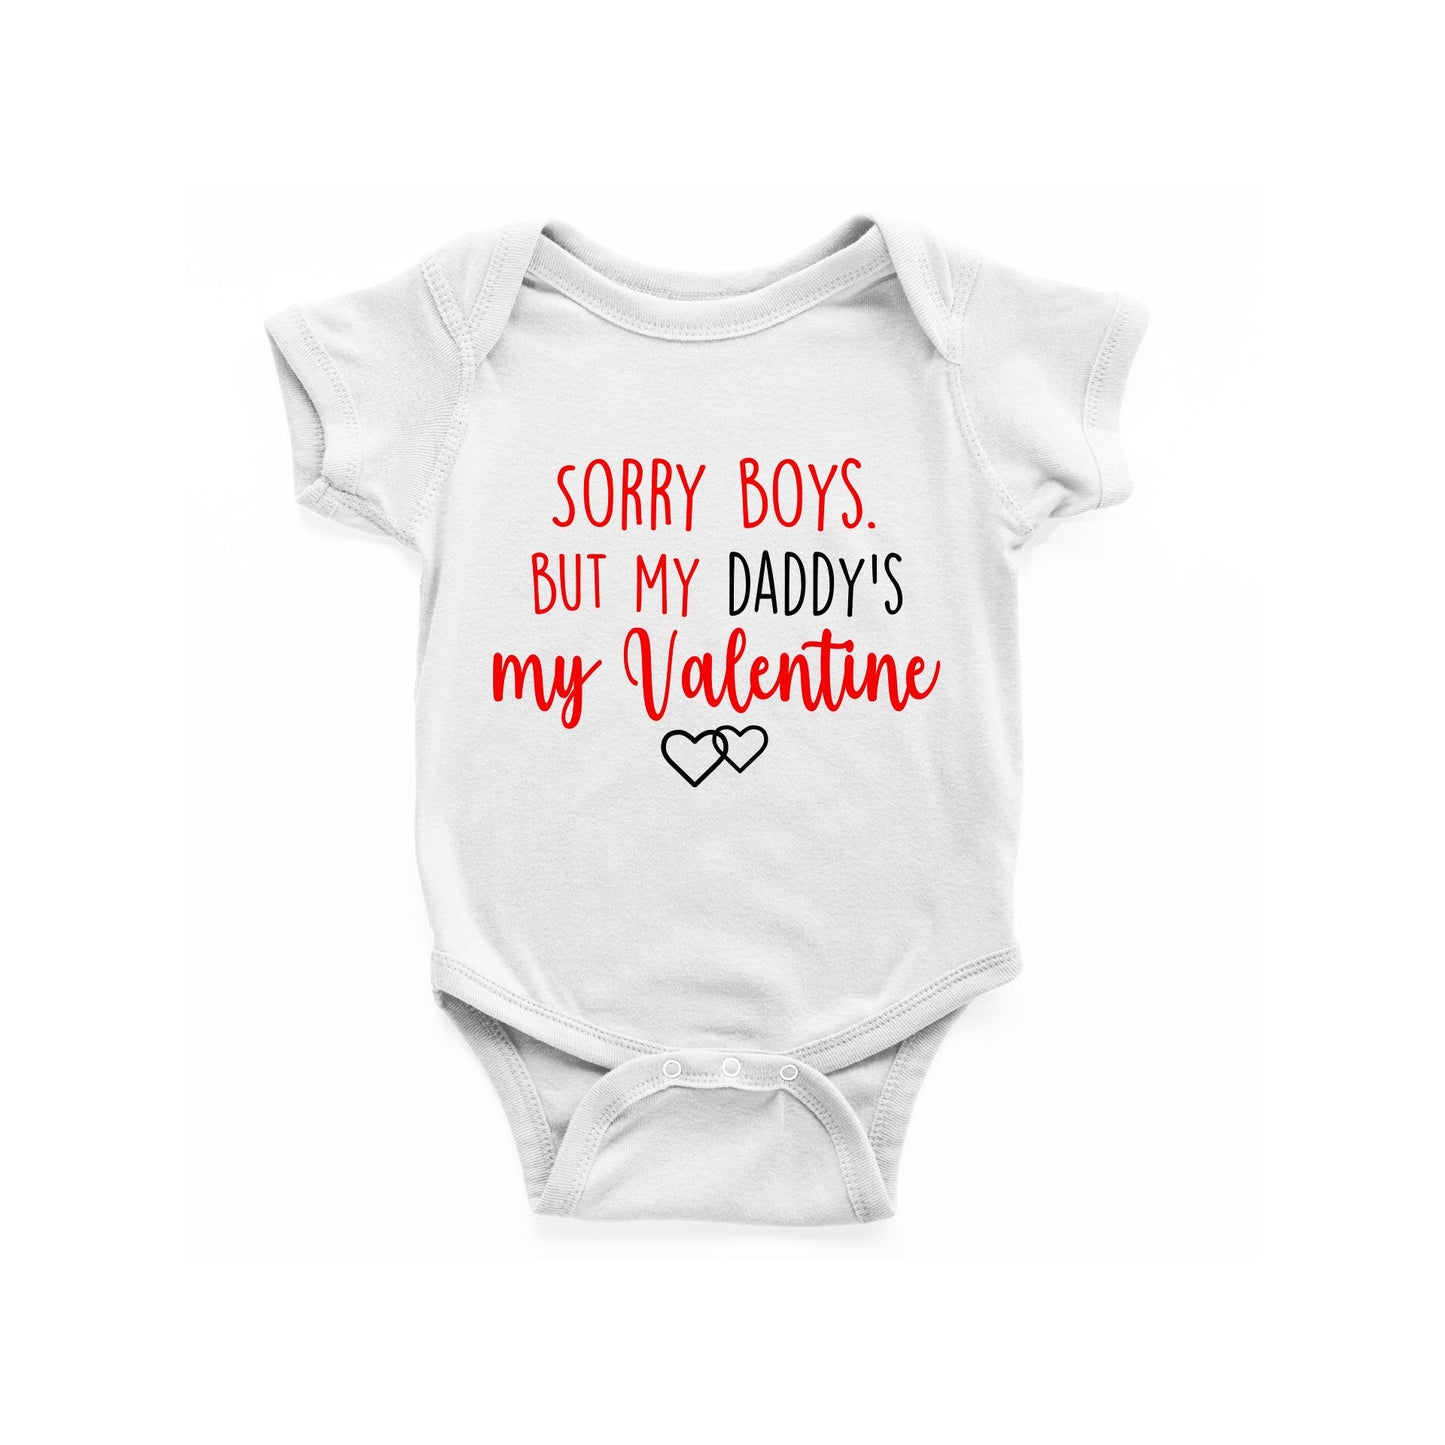 Sorry girls/boys but my mummy/daddy's my valentine Baby Vest, Baby Grow